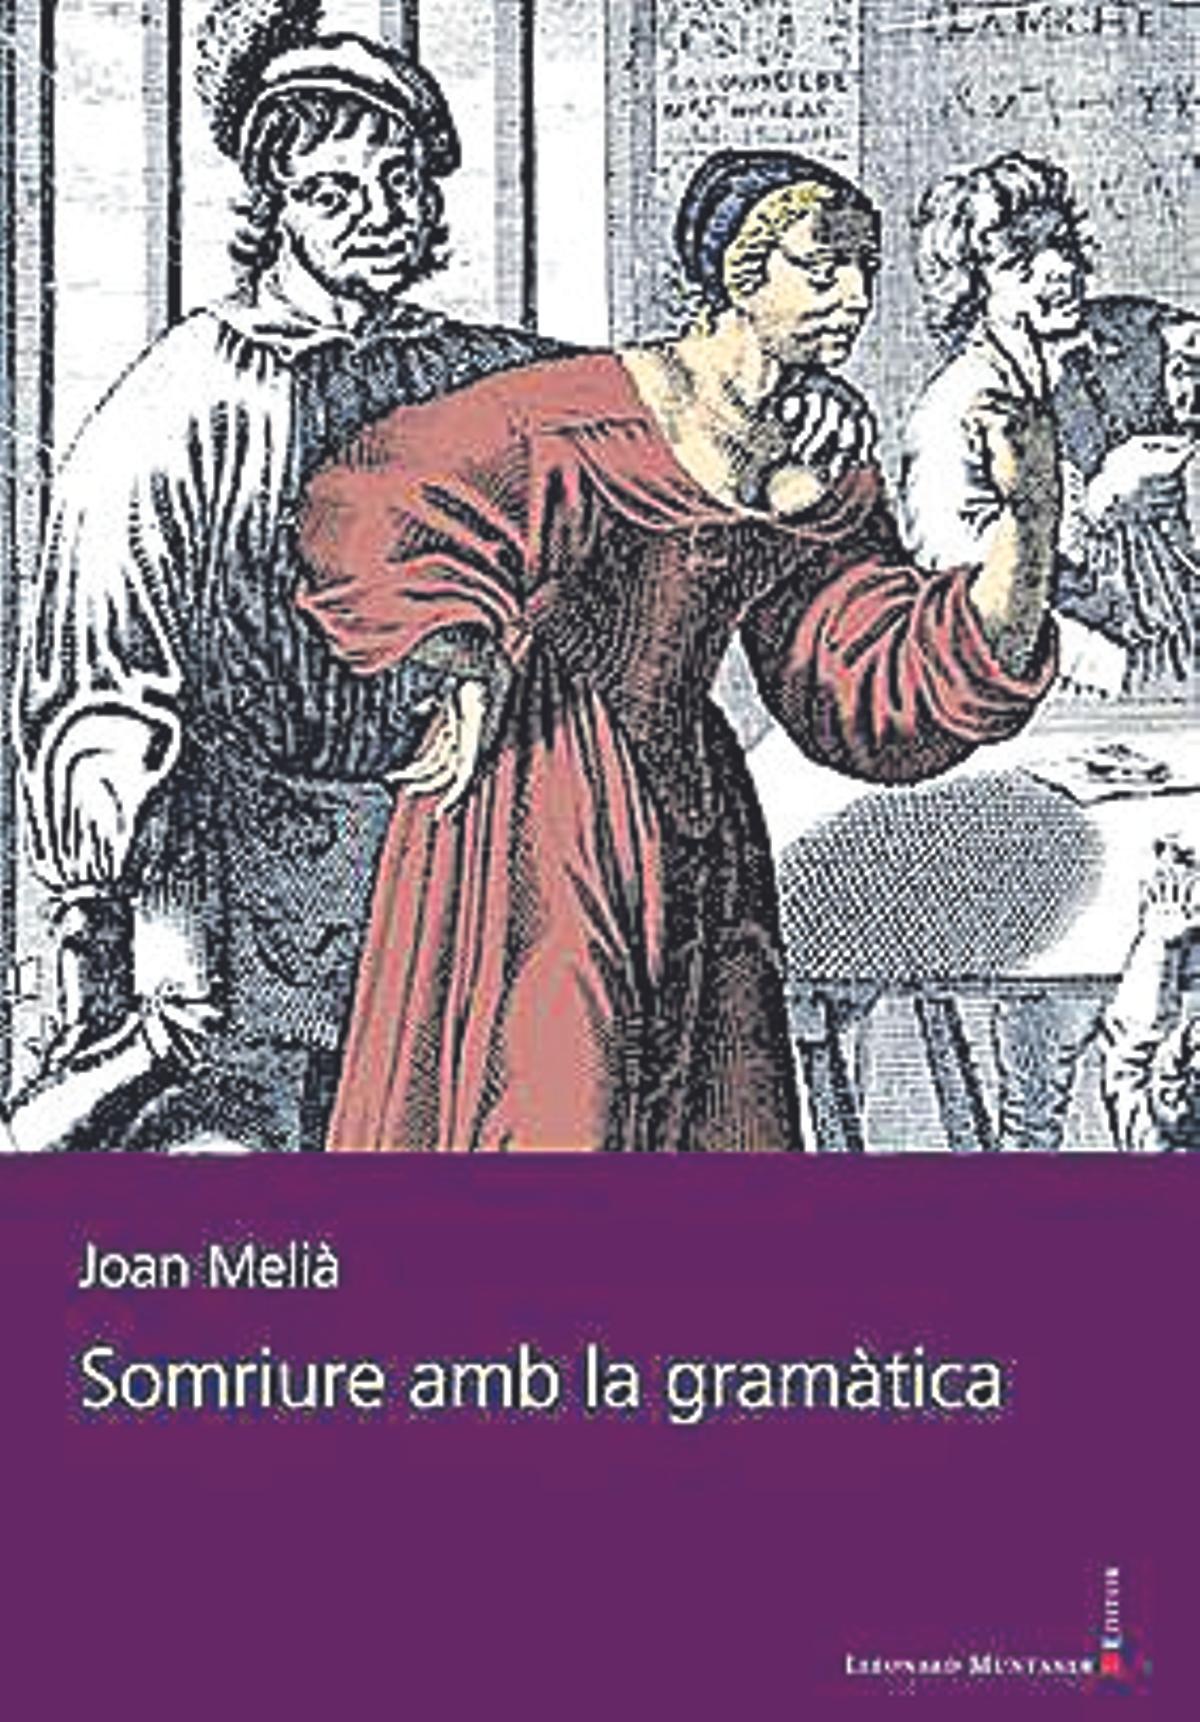 Portada del llibre: Somriure amb la gramàtica, de Joan Melià.